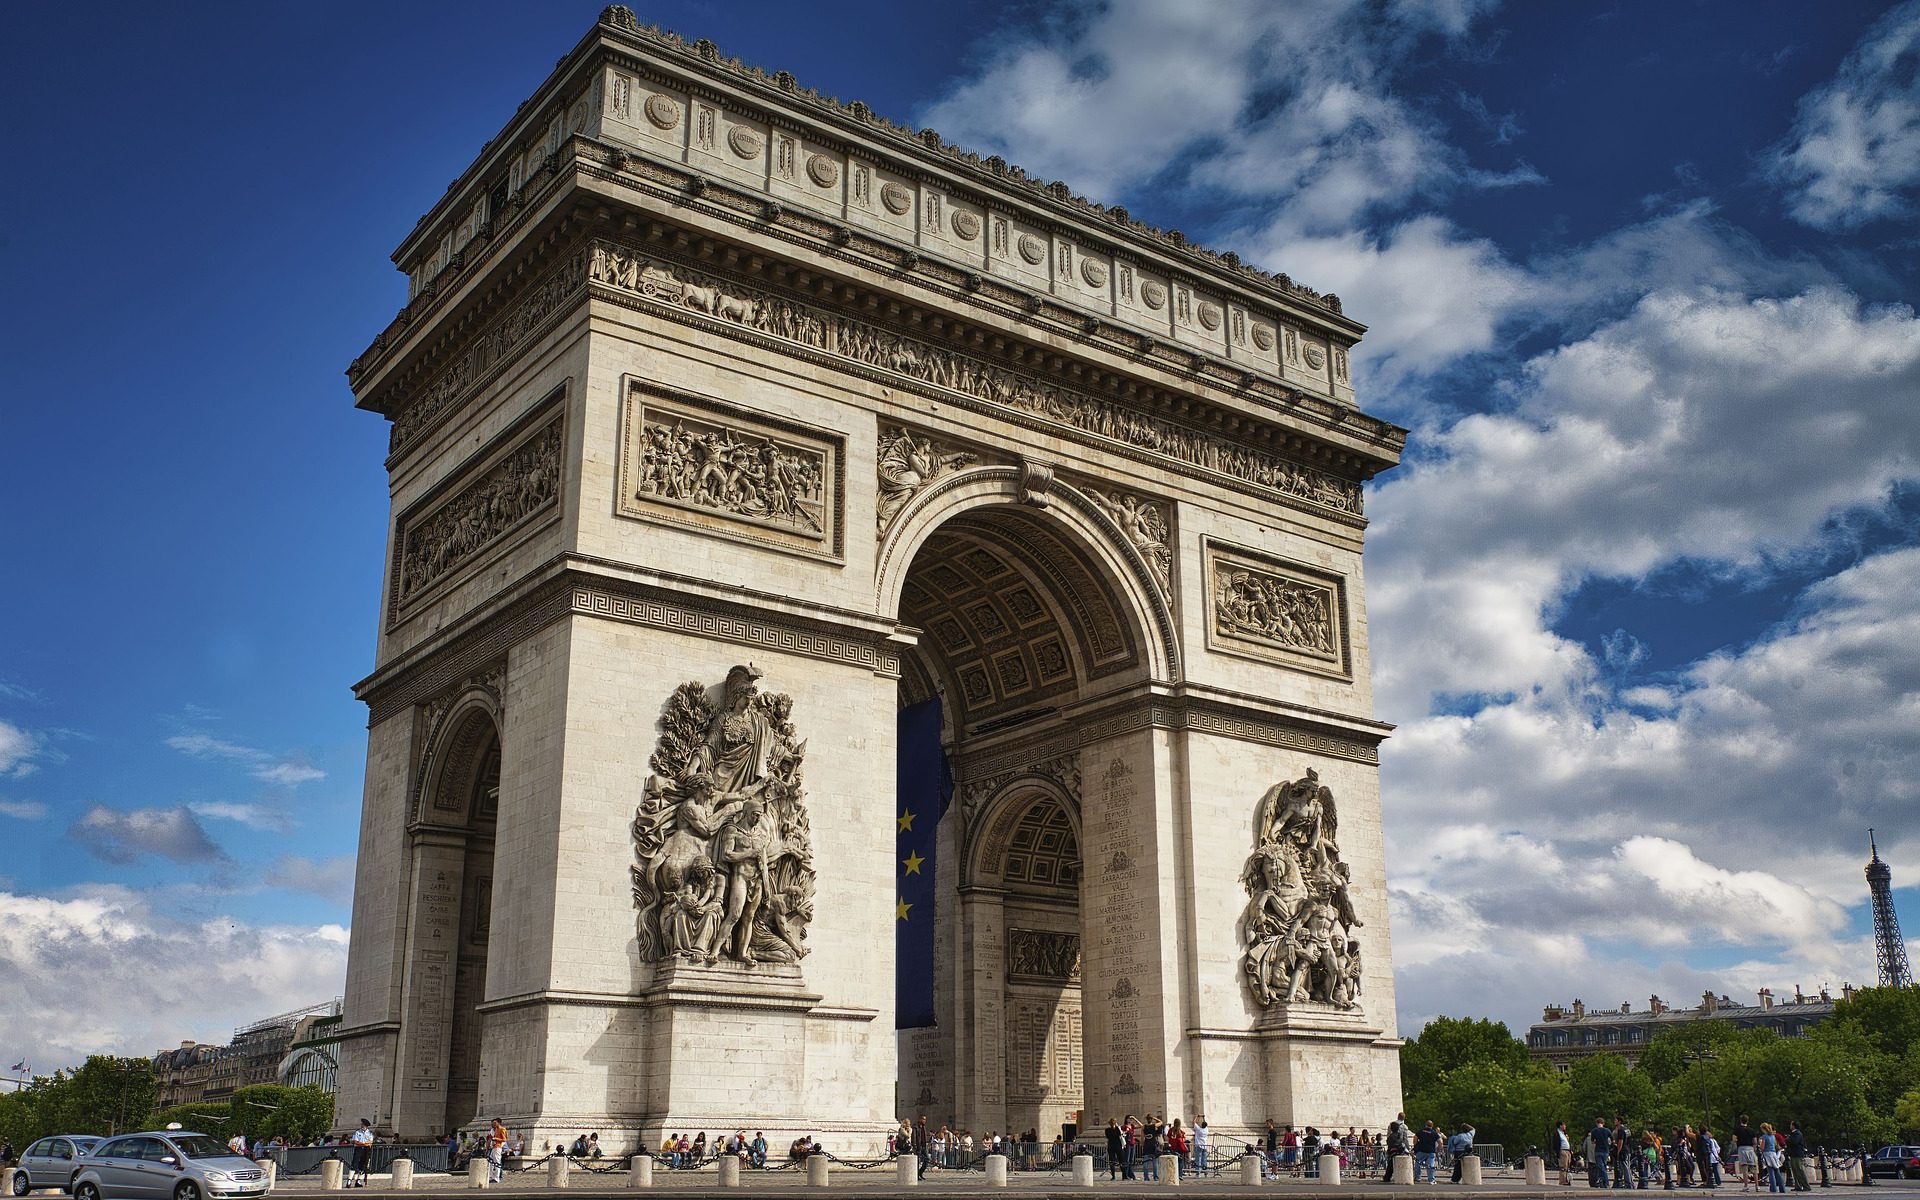 Arc de Triomphe, Triumphbogen, Paris